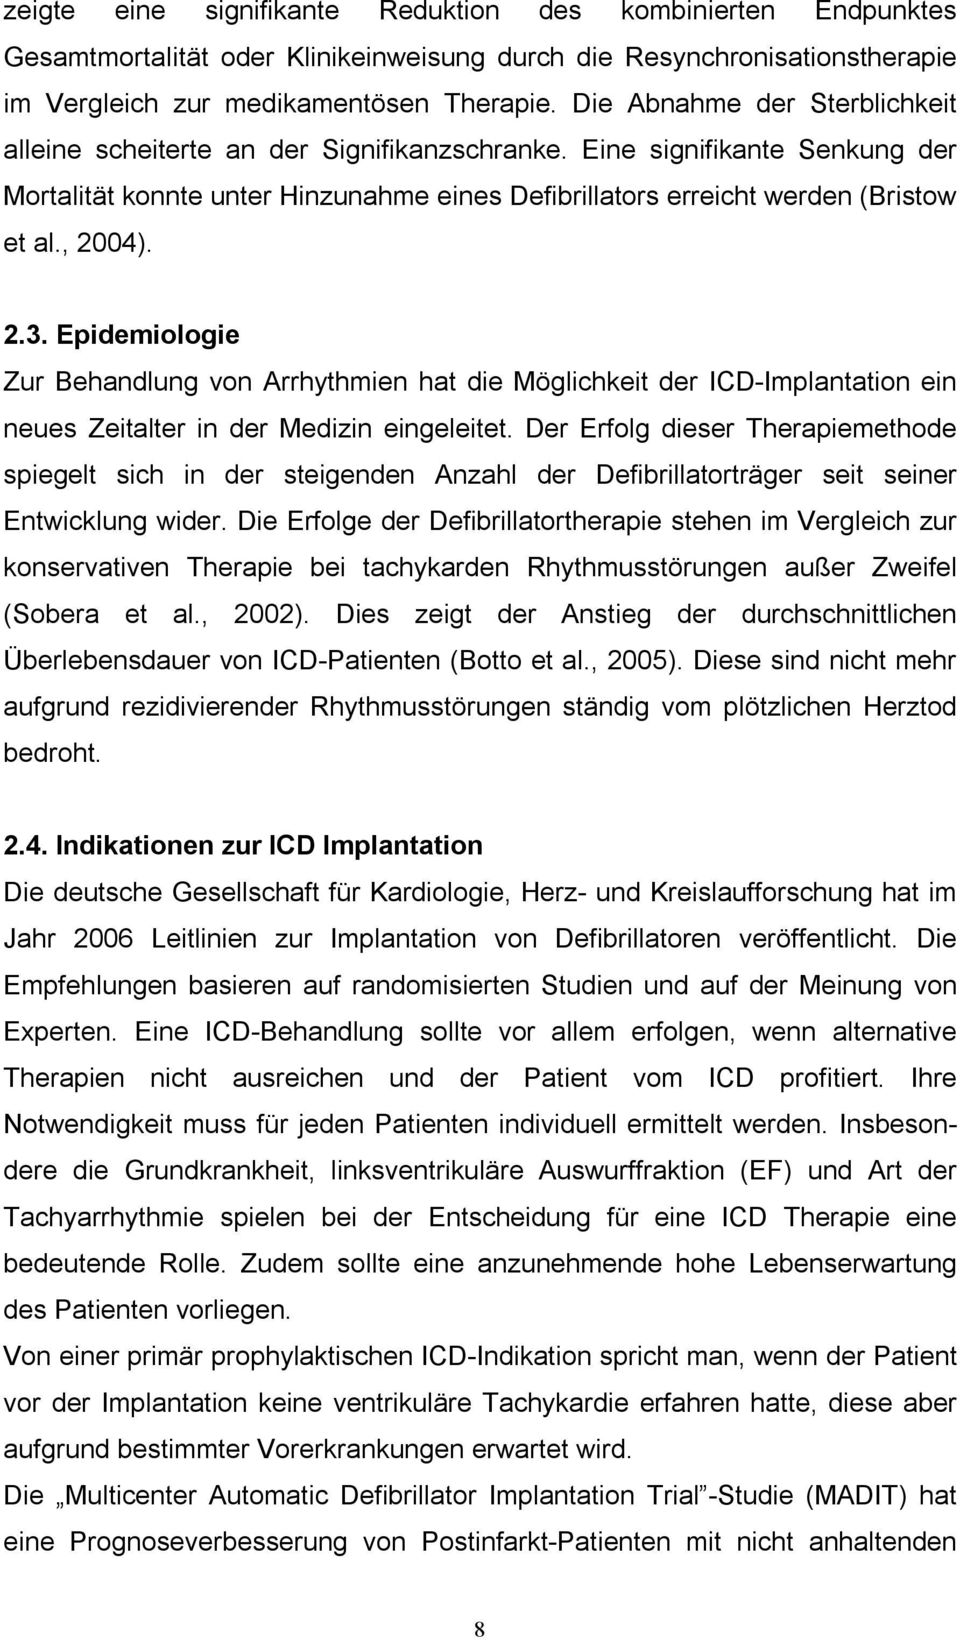 , 2004). 2.3. Epidemiologie Zur Behandlung von Arrhythmien hat die Möglichkeit der ICD-Implantation ein neues Zeitalter in der Medizin eingeleitet.